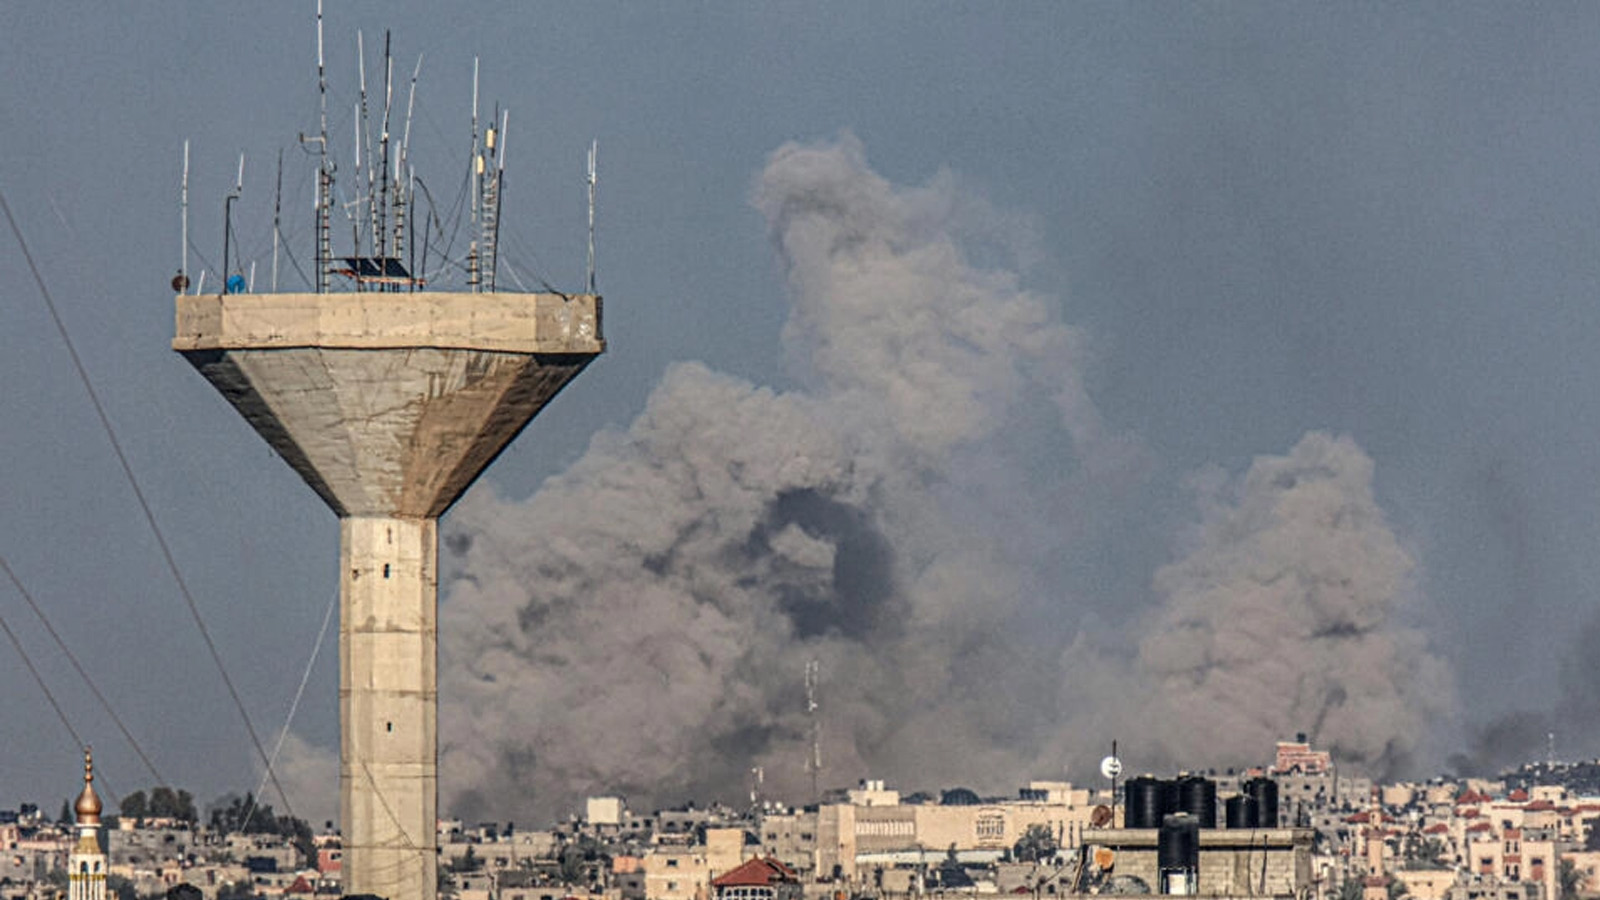 صورة التقطت من رفح في 5 يناير(كانون الثاني) 2024 تظهر الدخان يتصاعد فوق خان يونس في جنوب قطاع غزة أثناء القصف الإسرائيلي، وسط معارك مستمرة بين إسرائيل وحركة حماس الفلسطينية